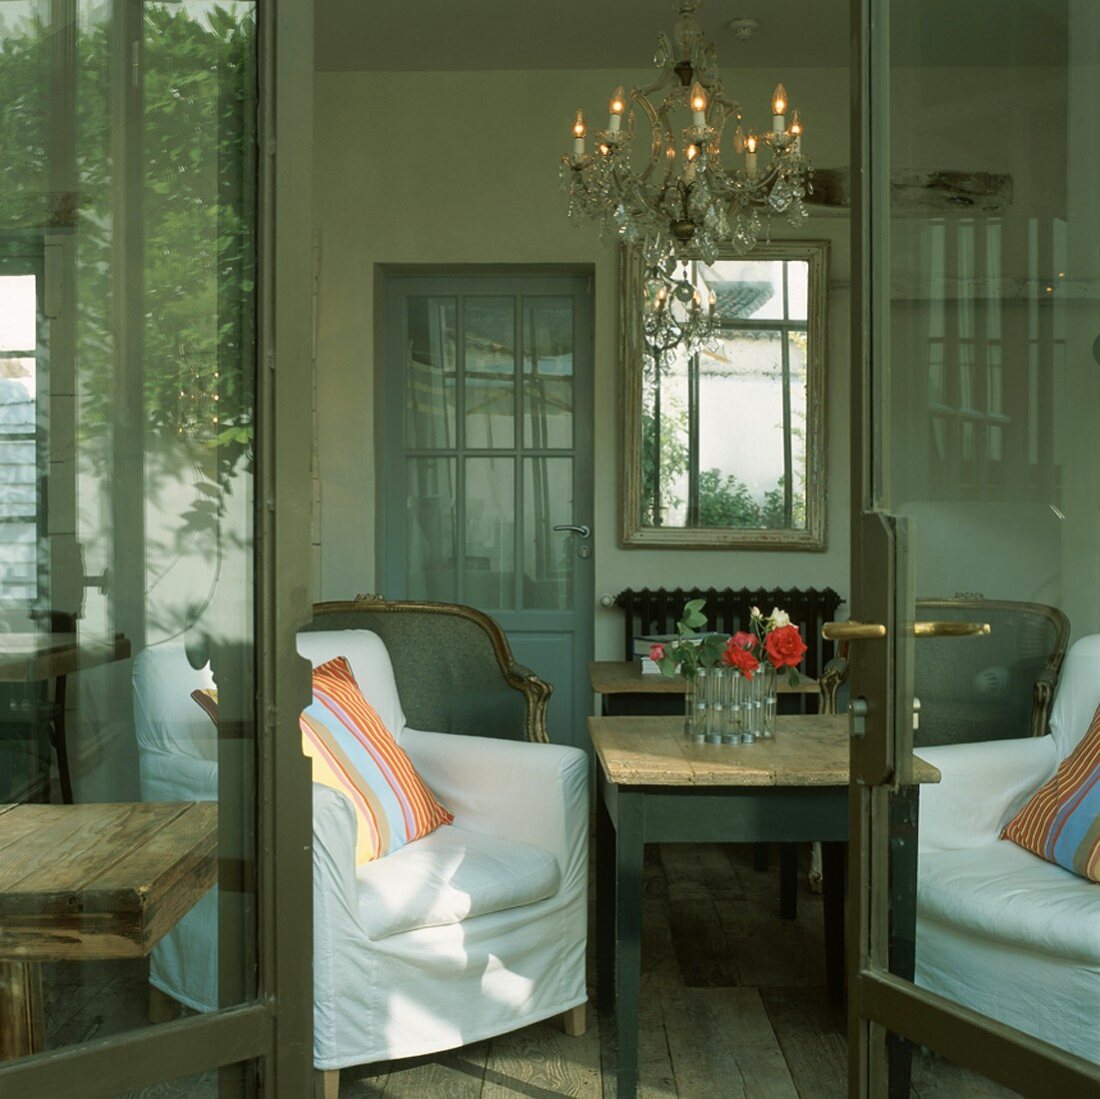 Blick durch die geöffnete Terrassentür in das Wohnzimmer mit Kronleuchter und verschiedenen Sesseln